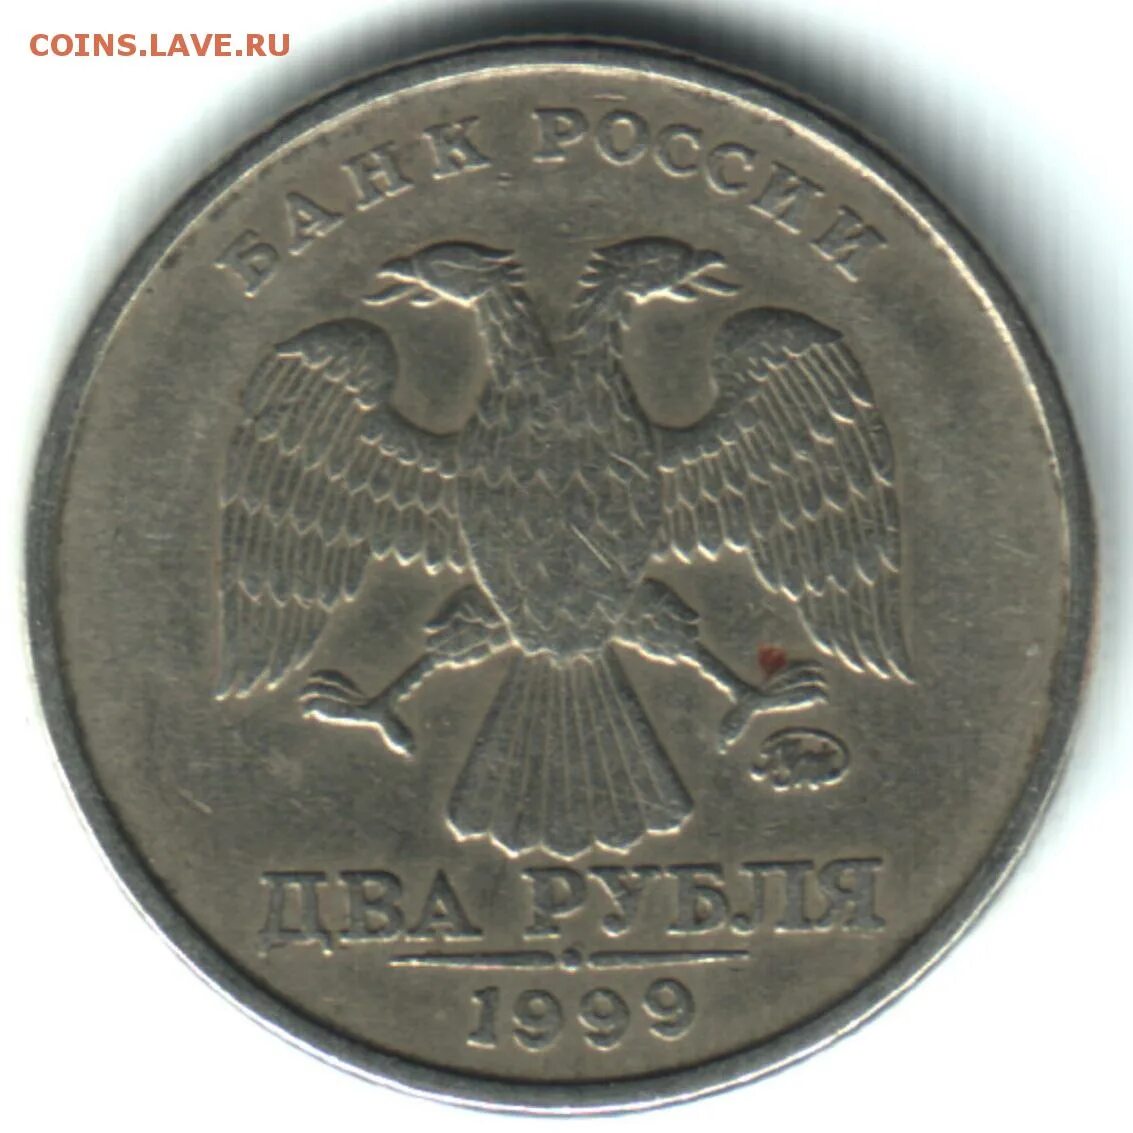 СПДМ монеты. 10 Рублей 1999. Монета 5 рублей 1999 года СПМД. Как выглядит СПДМ на монетах. 10 23 в рублях